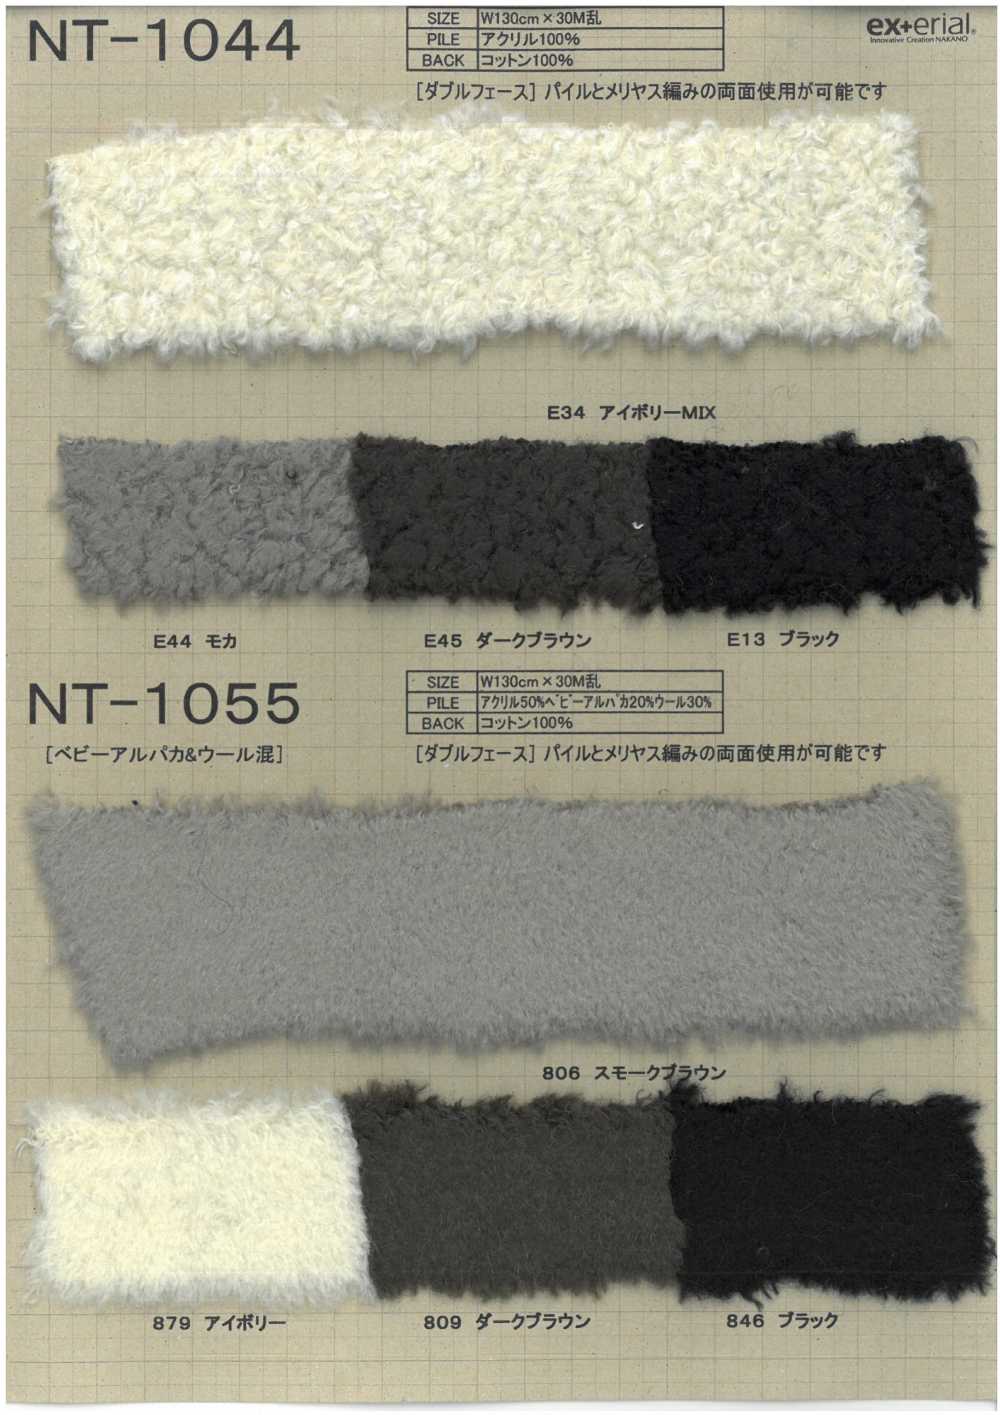 NT-1044 Pelliccia Artigianale [Pecora Double Face][Tessile / Tessuto] Industria Delle Magliette A Nakano